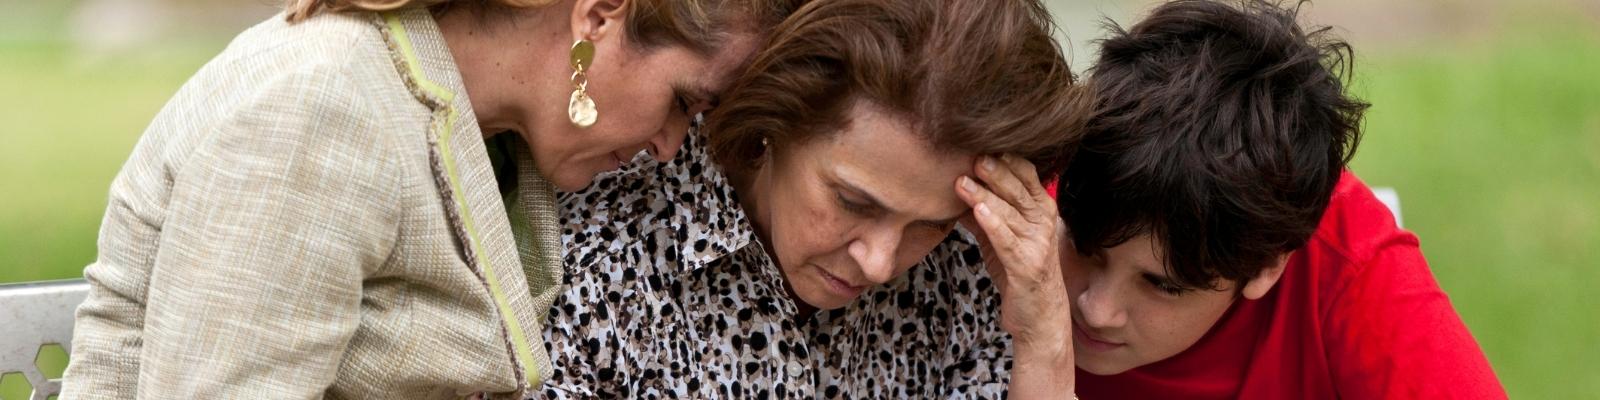 Unutkanlık Alzheimer Belirtisi mi?